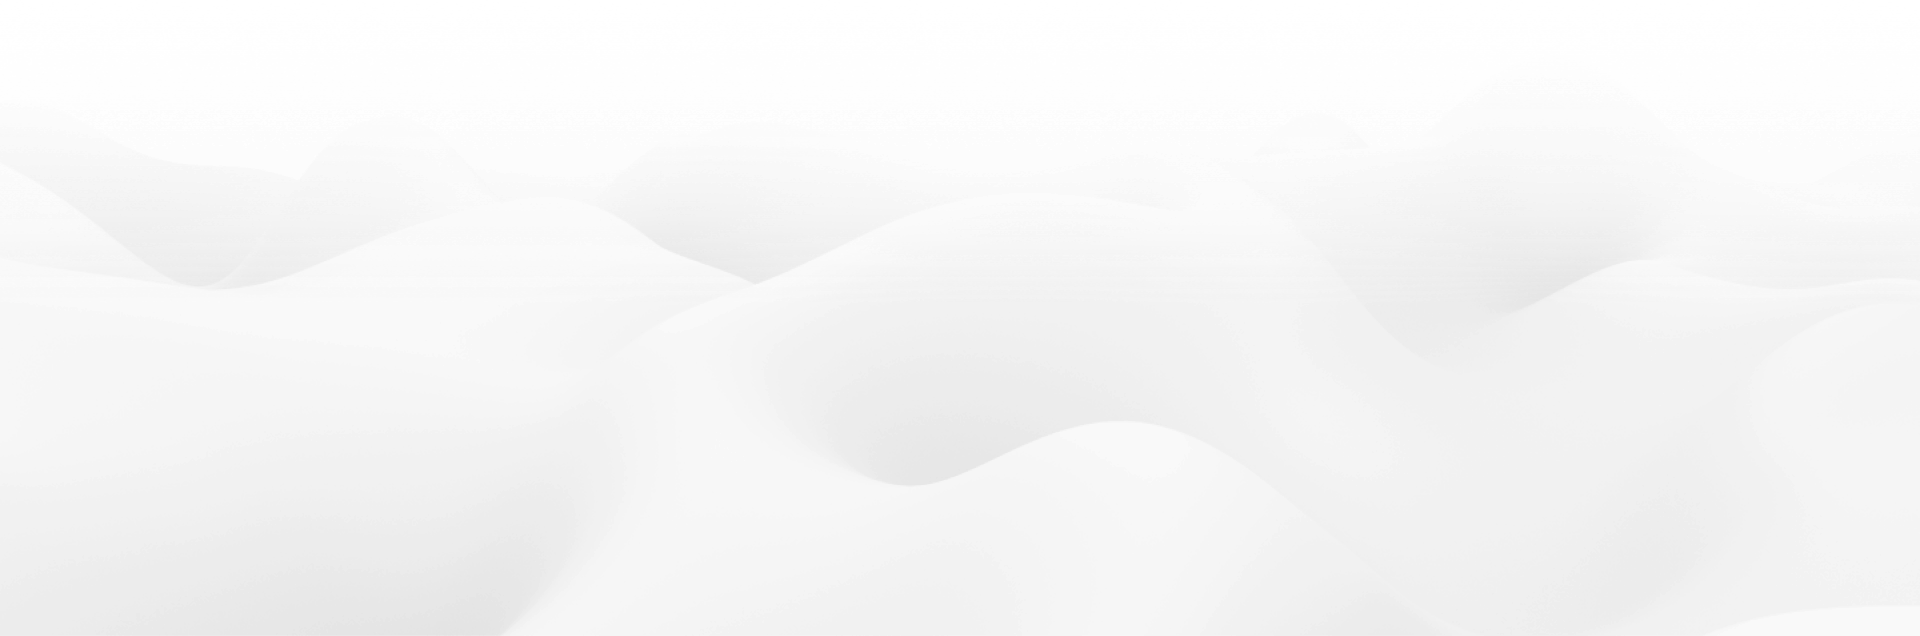 Полупрозрачный белый фон с волнистыми линиями